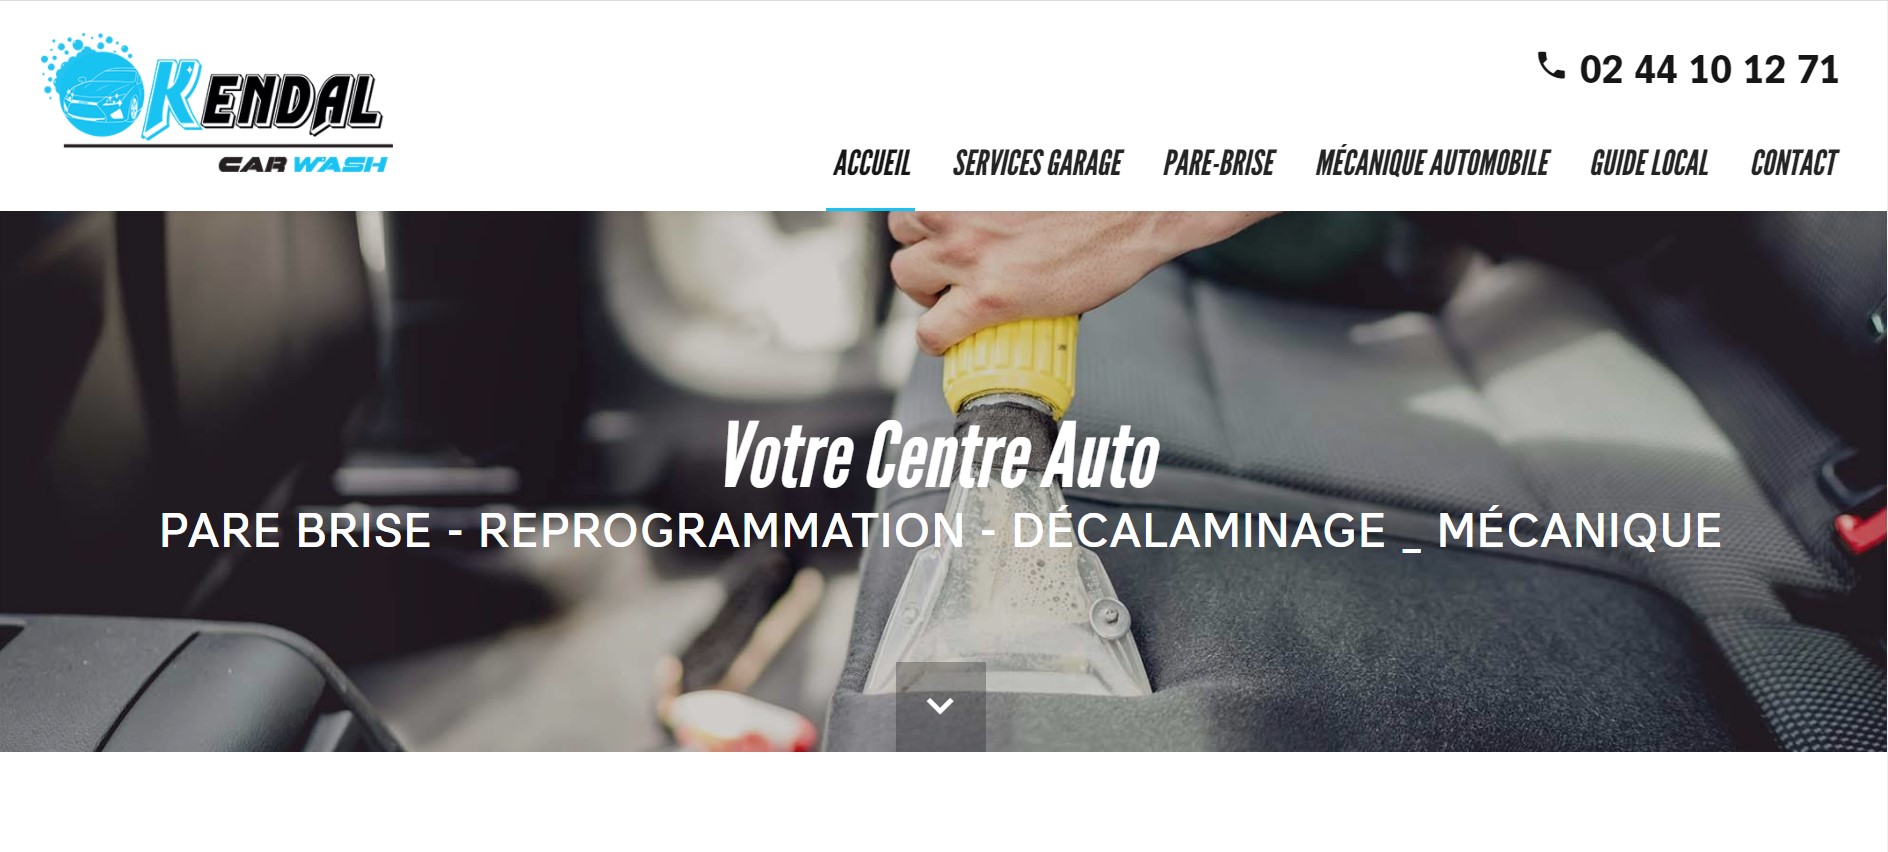 garage pour remplacement et réparation de pare-brise sur tous véhicules Barentin proche de Rouen en Seine Maritime